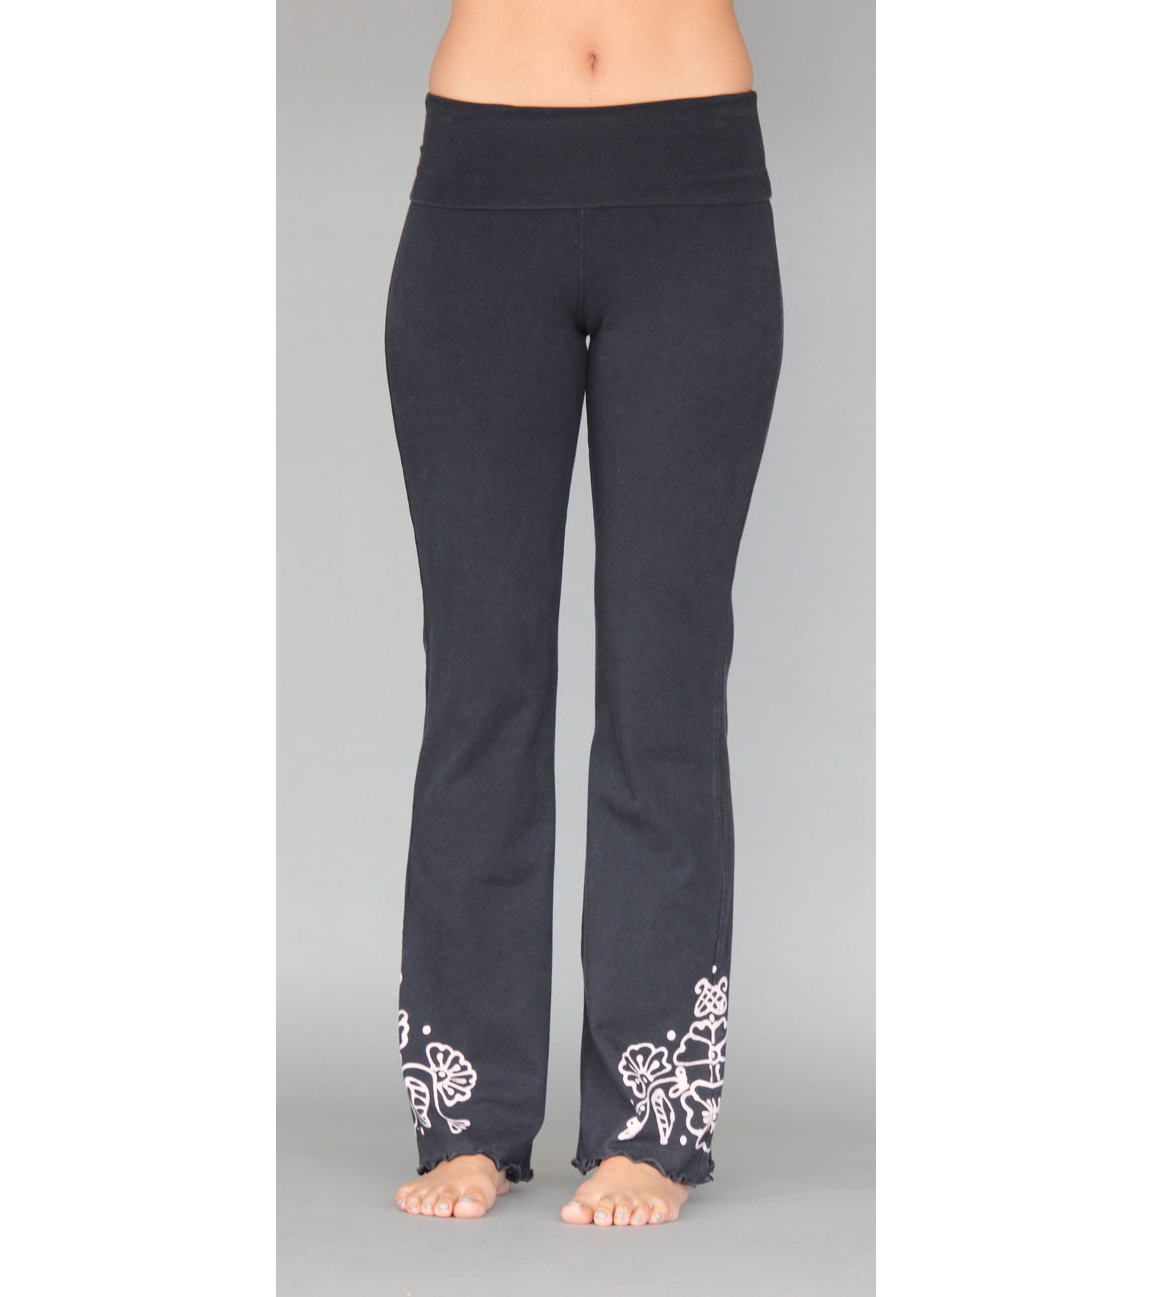 Women Yoga Pants Organic Cotton - Black/Grey